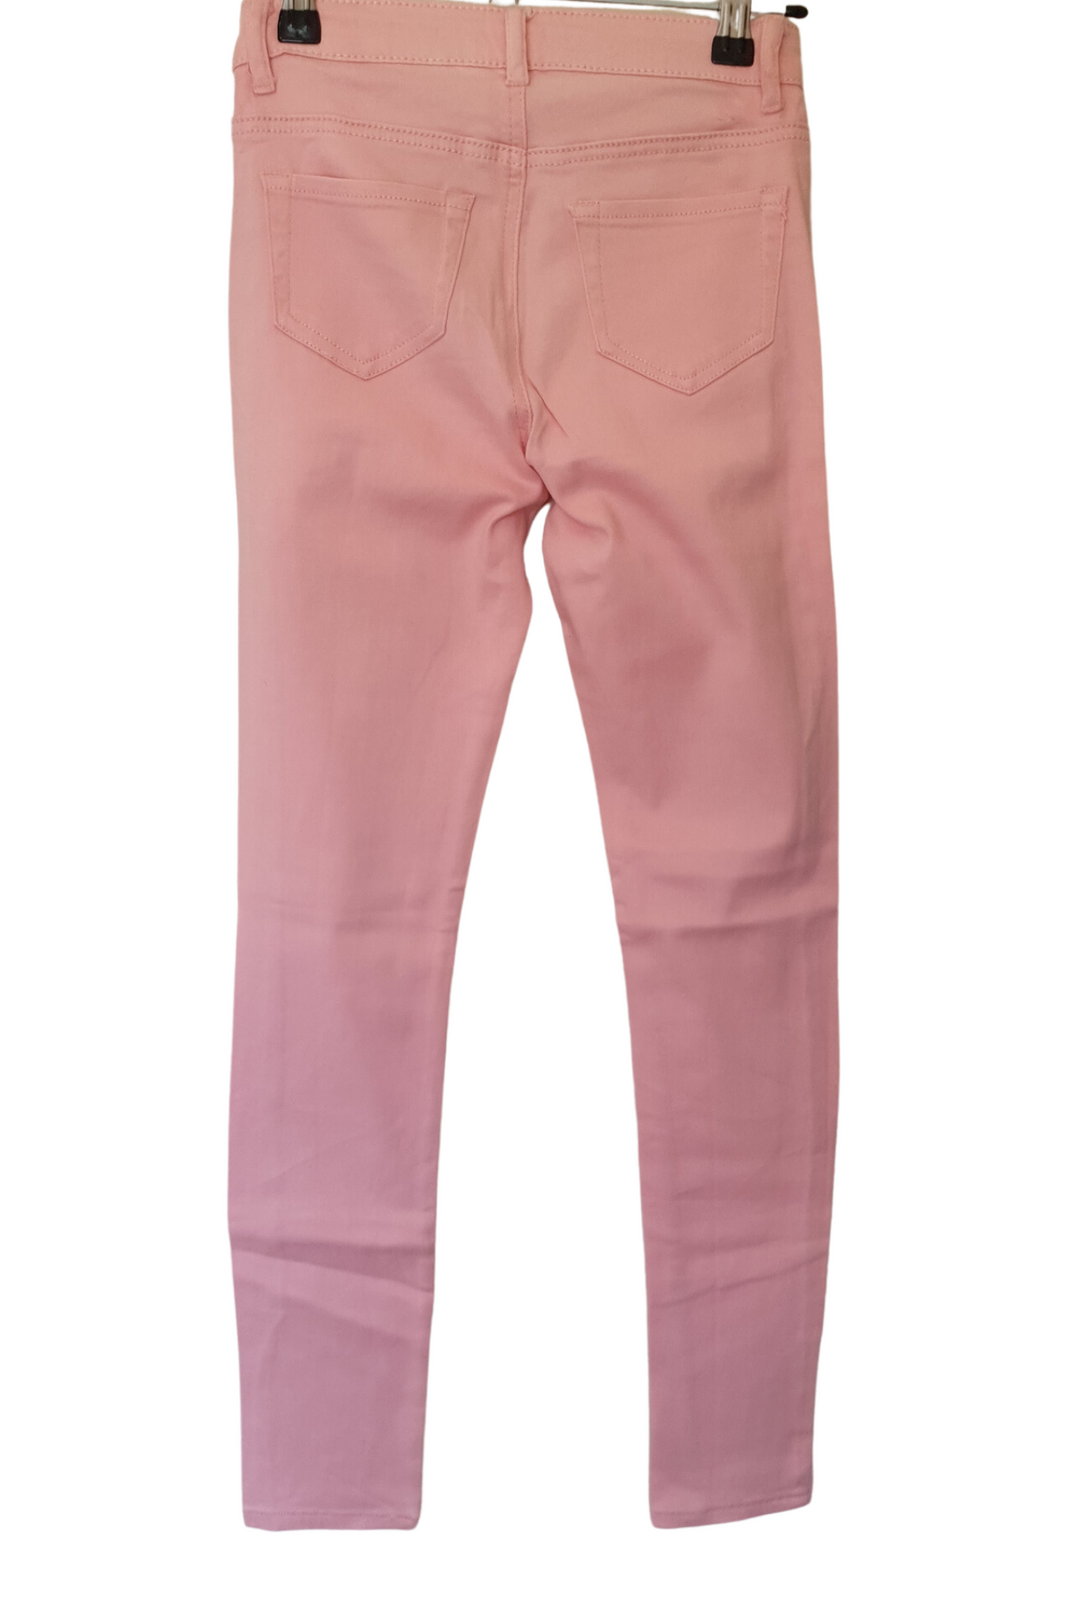 Jegging Jeans Soft Pink